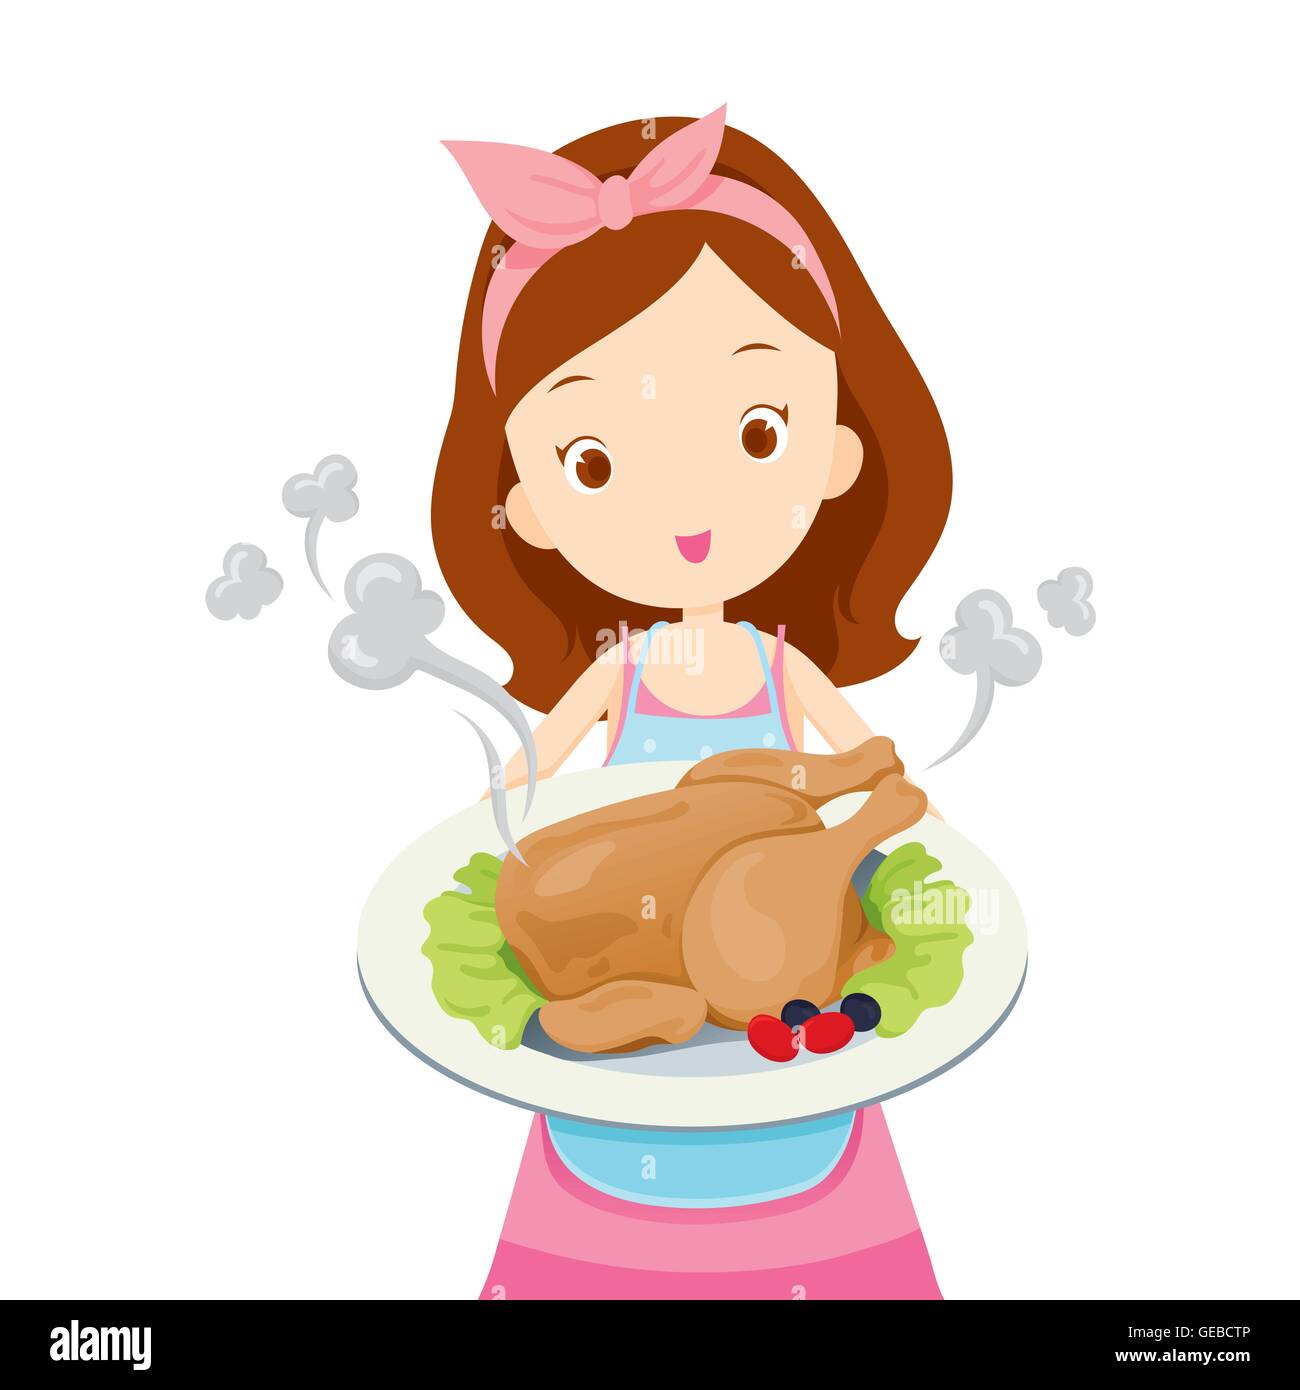 Girl zeigt Brathähnchen auf Küche, Geschirr, Teller, Geschirr, Kochen, Lebensmittel, Bäckerei, Beruf, Lifestyle Stock Vektor